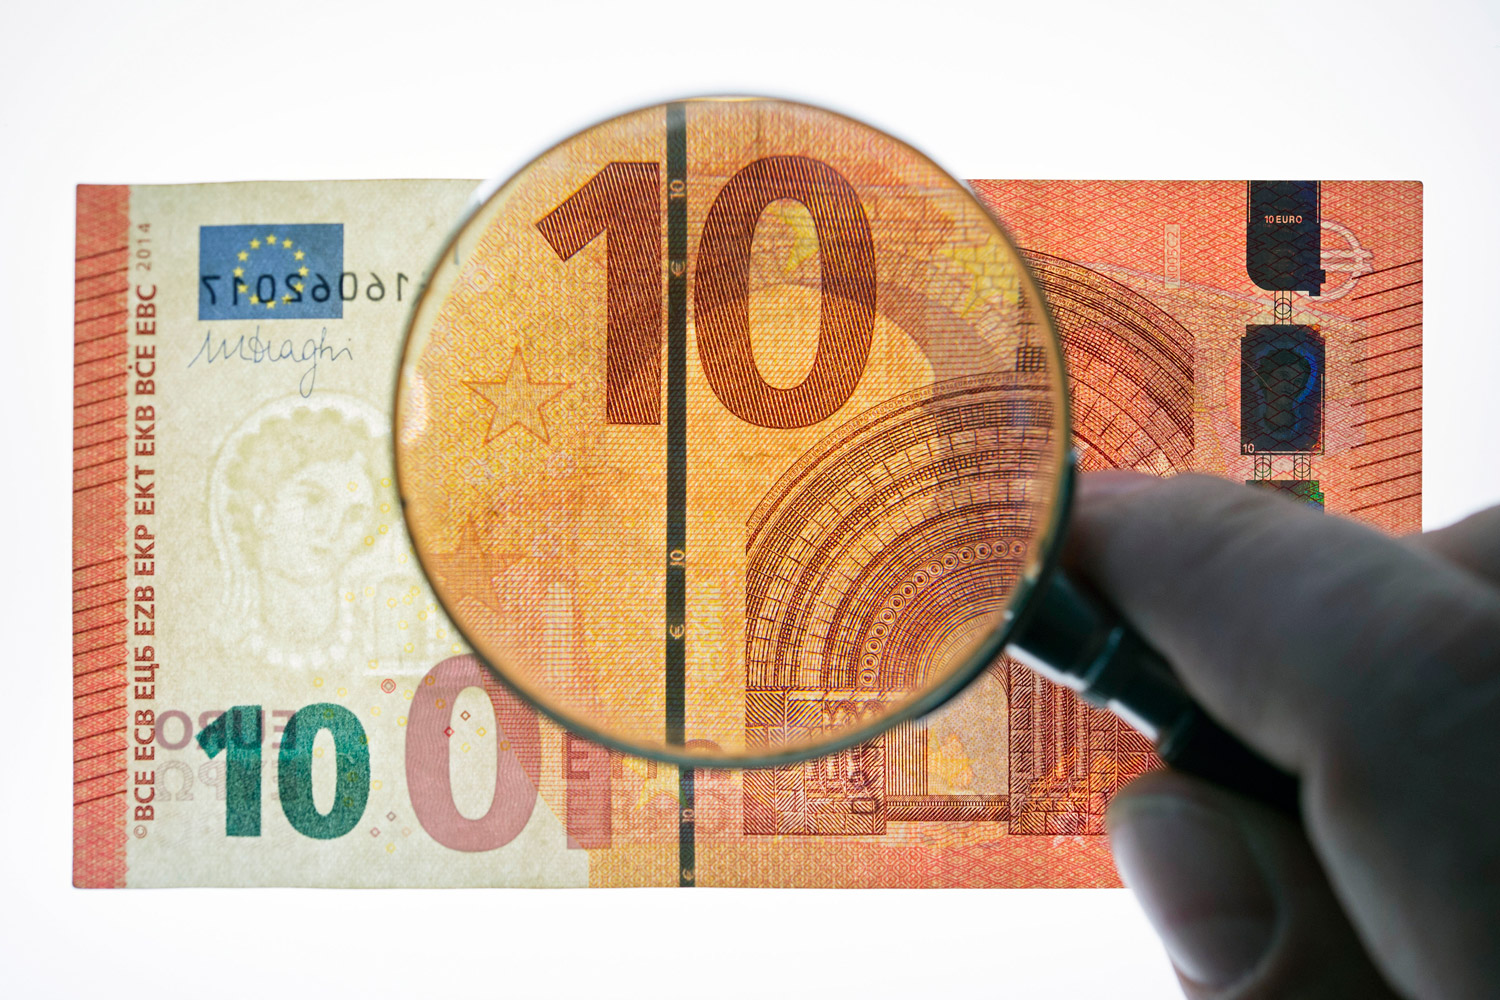 Los nuevos billetes de diez euros correspondientes a la serie ‘Europa’ comienzan a circular. Así son